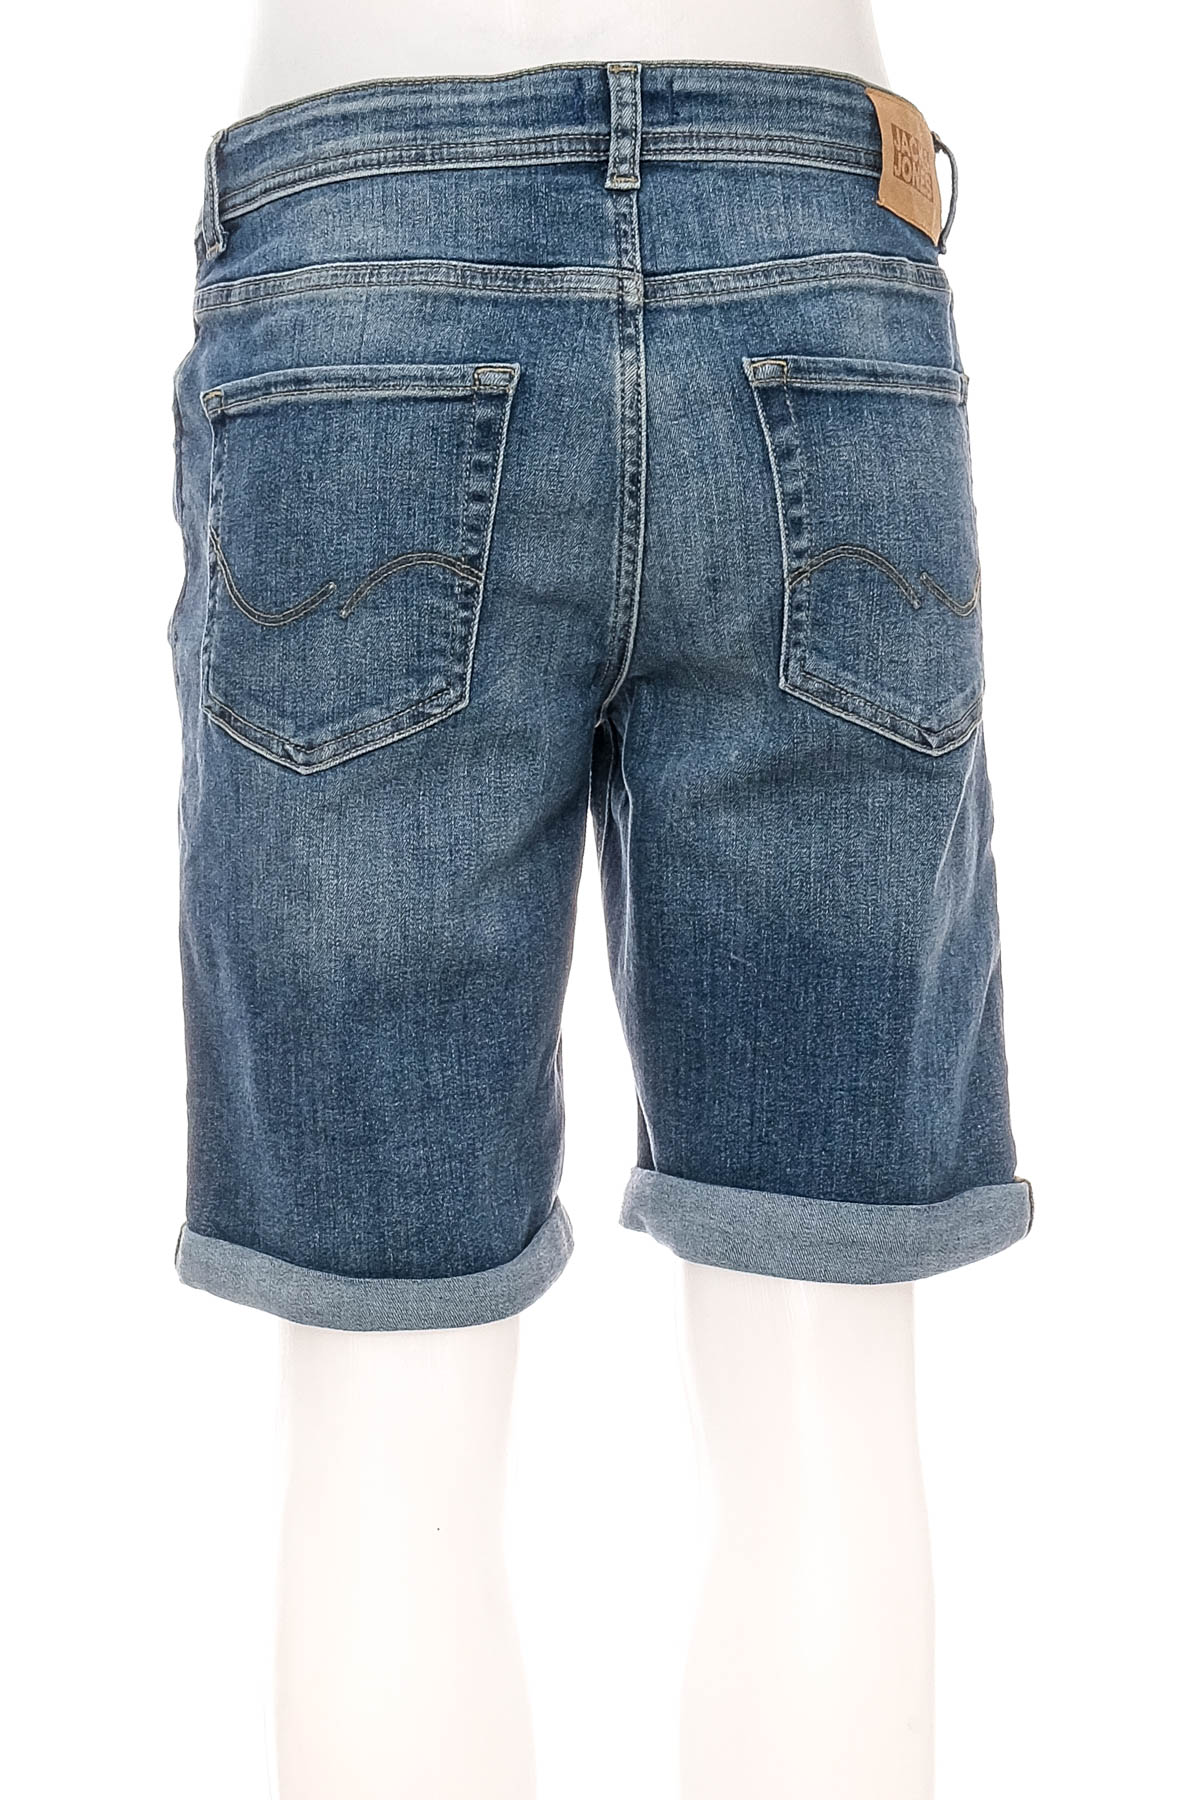 Pantaloni scurți pentru băiat - JACK & JONES - 1